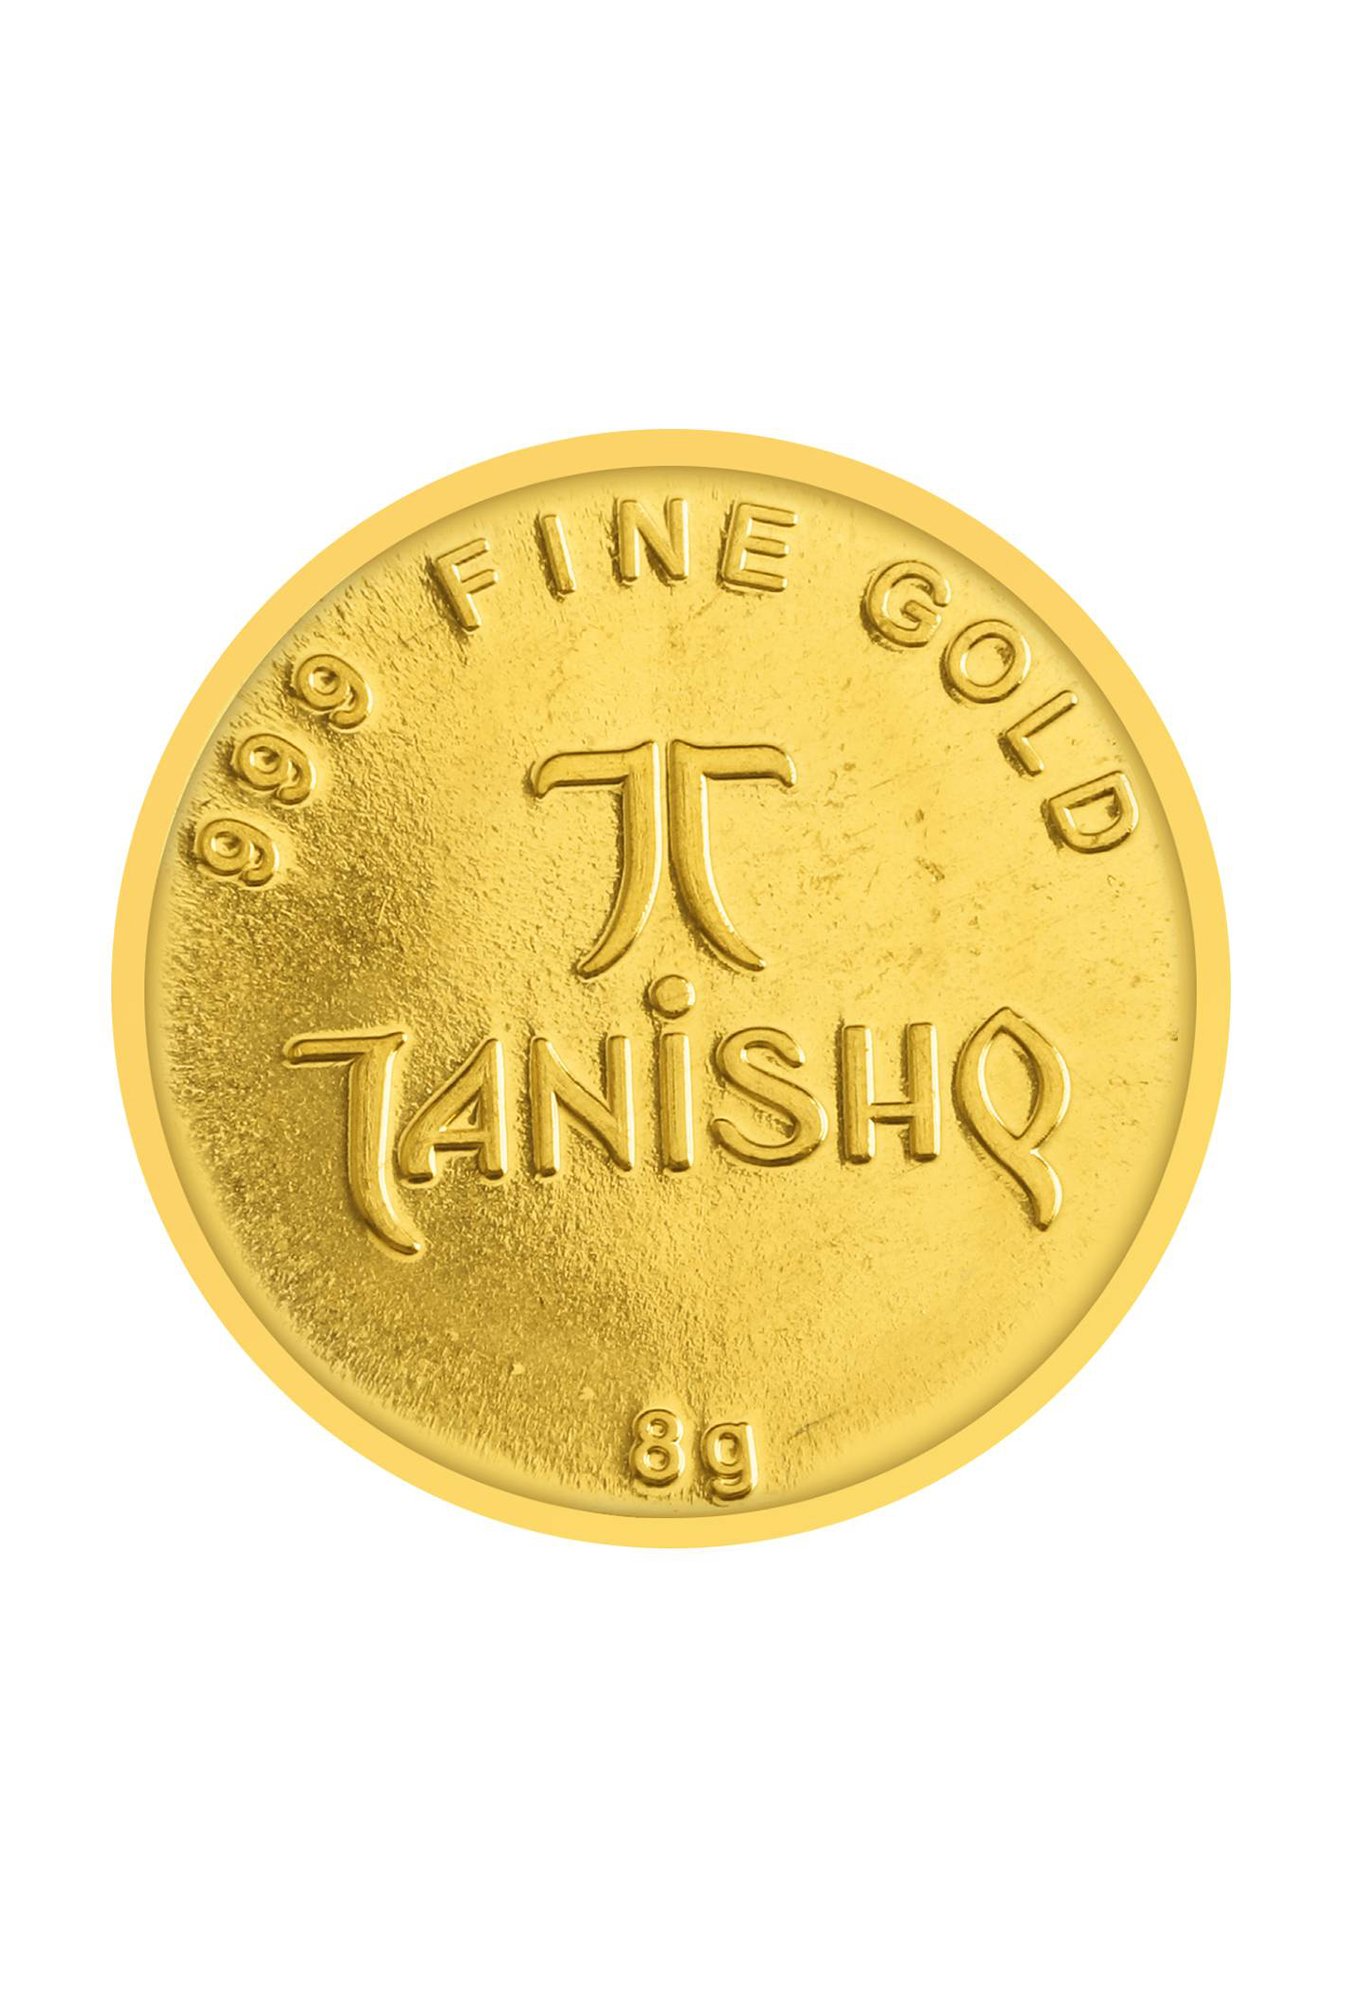 Buy Tanishq Radial 24k (999) 8g Gold 